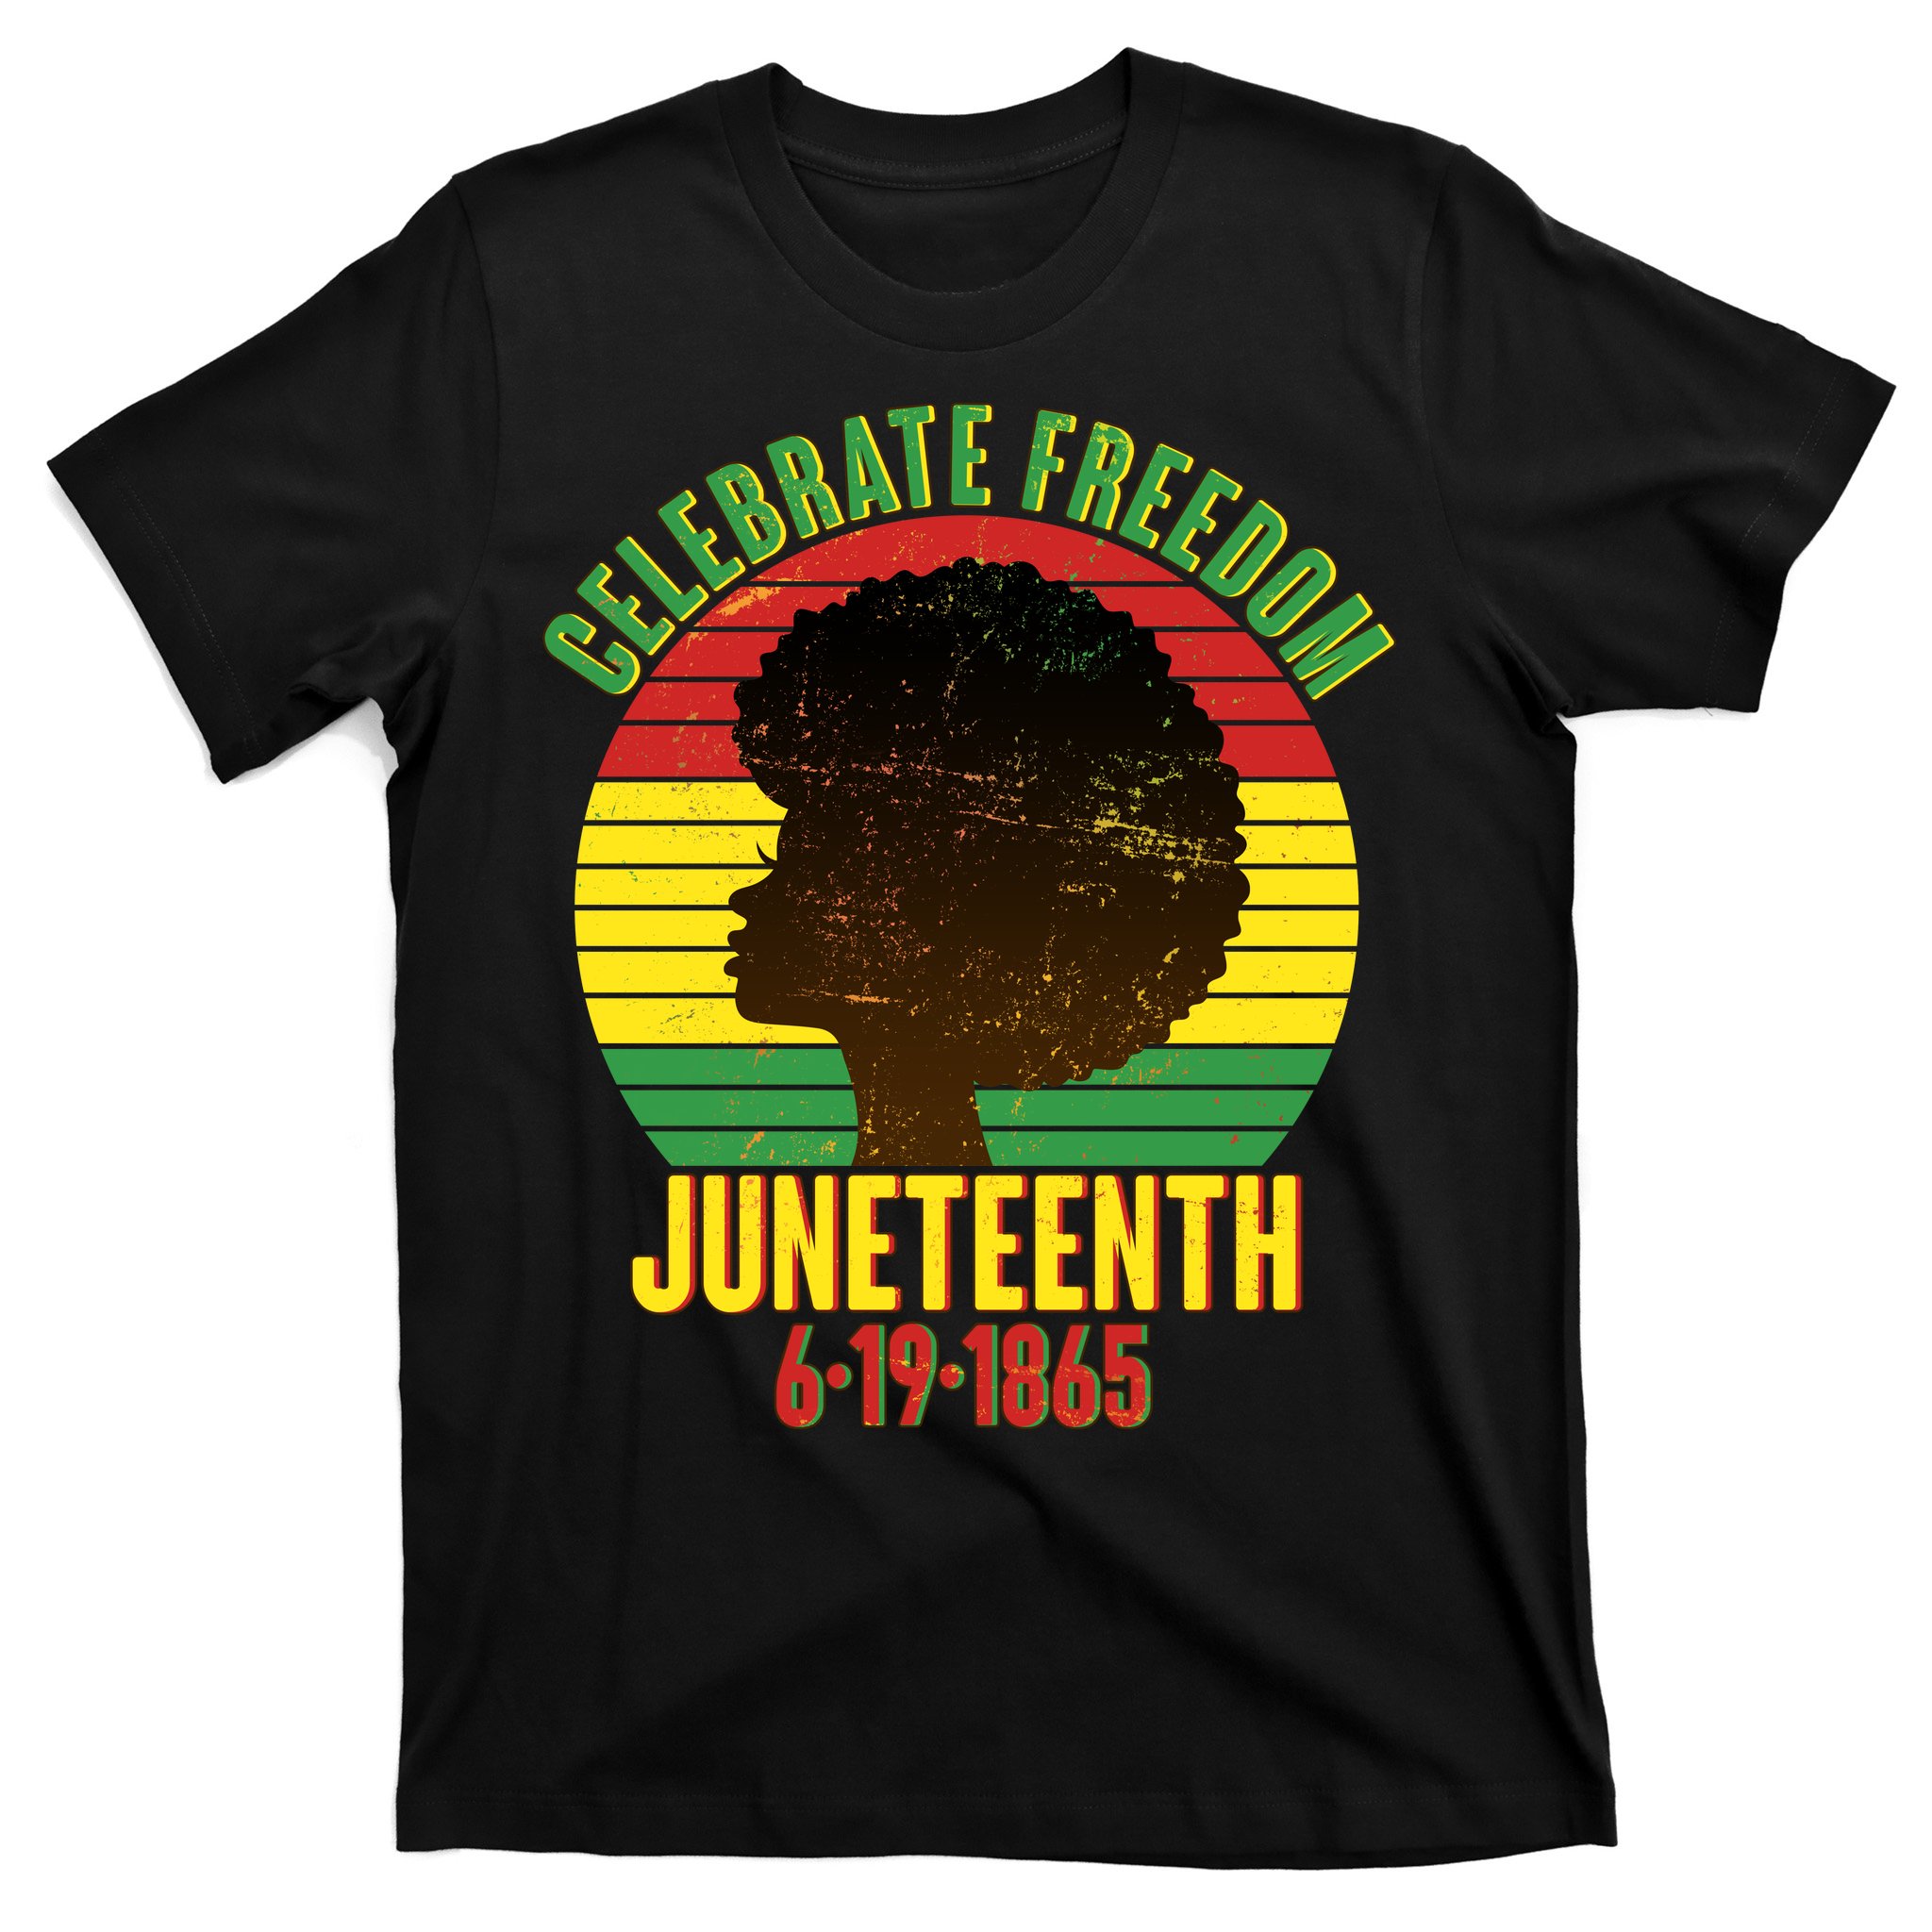 Juneteenth Shirt-Juneteenth Shirt for Her-Juneteenth Girl with Hair-Black Woman Shirts-Queen Afro Shirt-Black Culture Shirt-Celebrate Tshirt